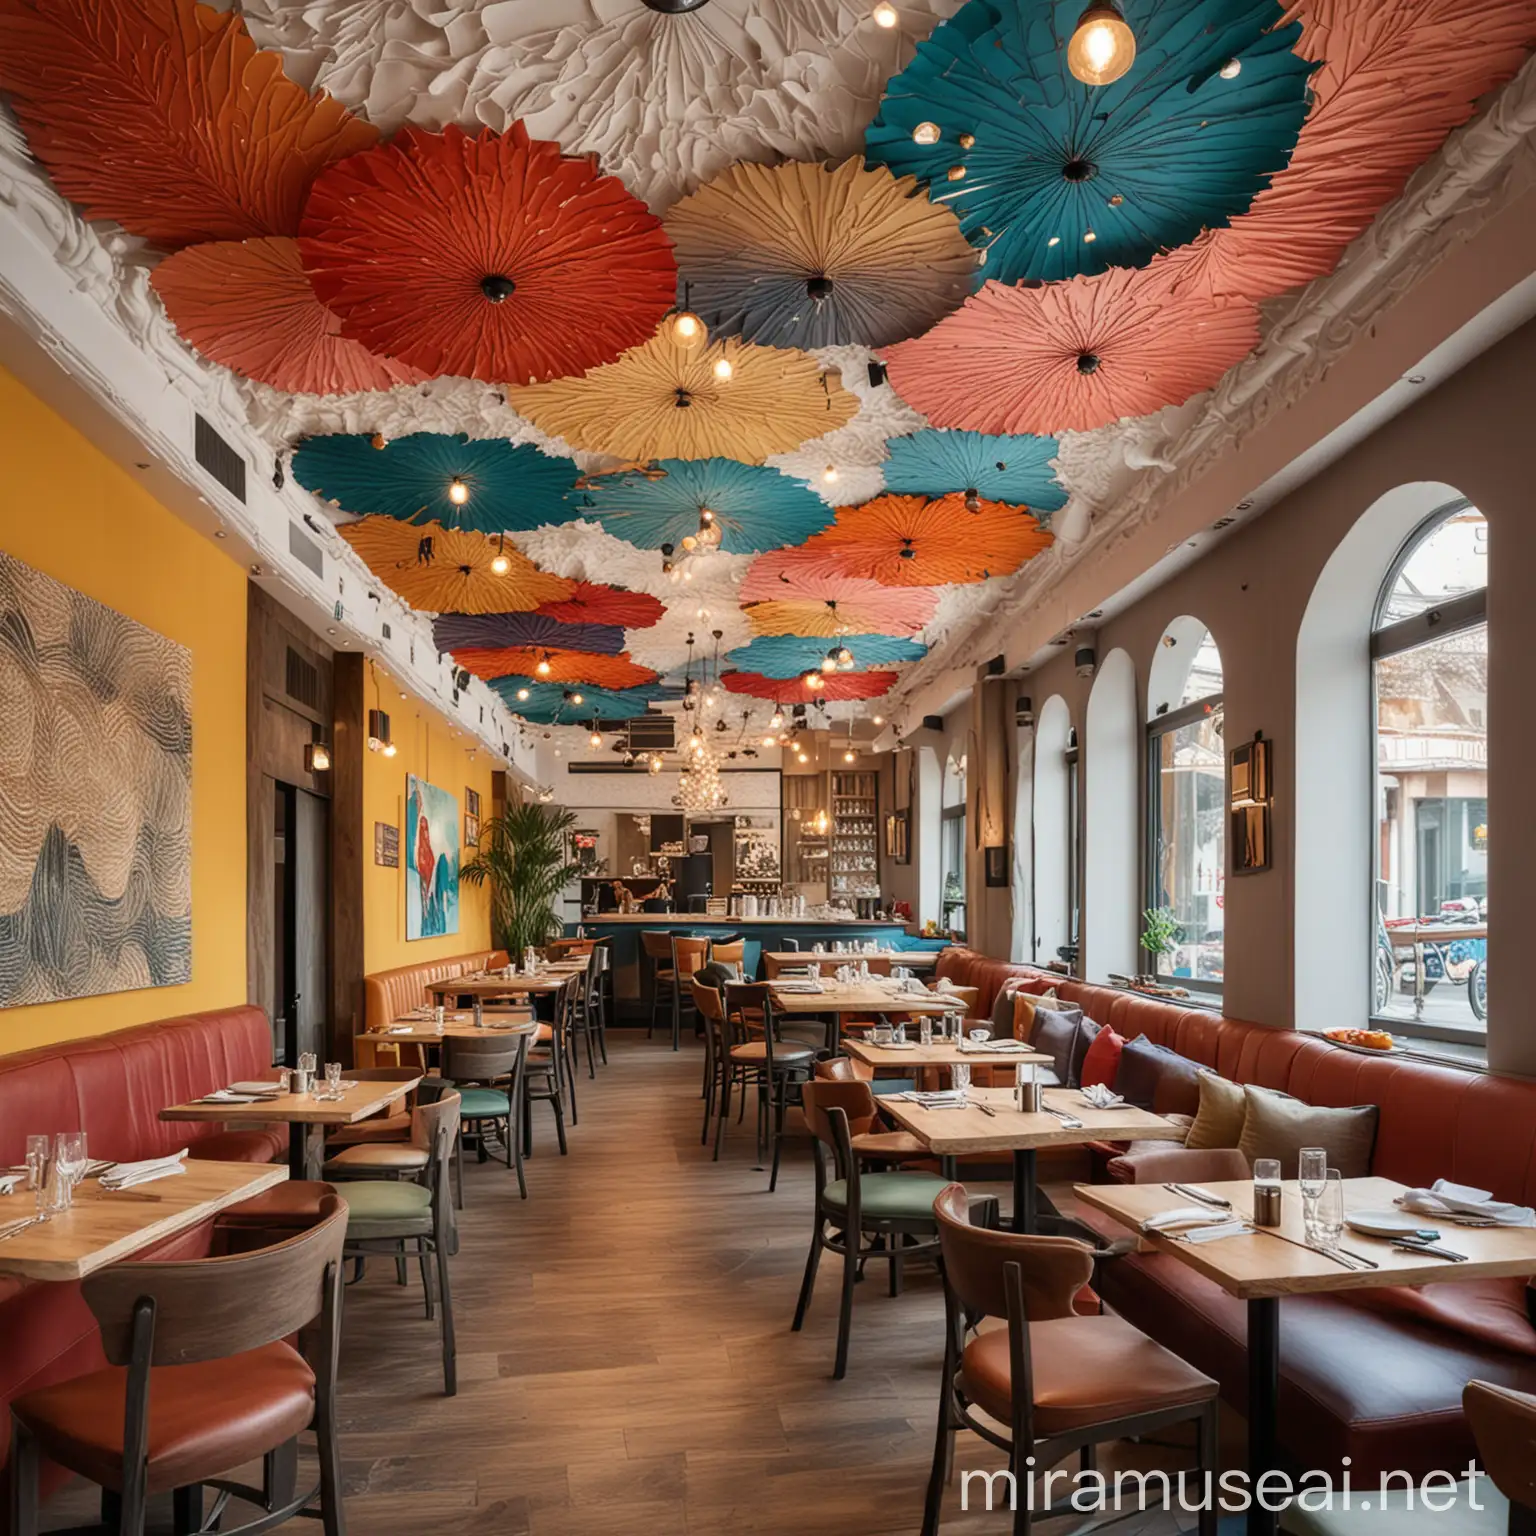 Colorful Handmade Ceiling Decor in Restaurant Interior Design